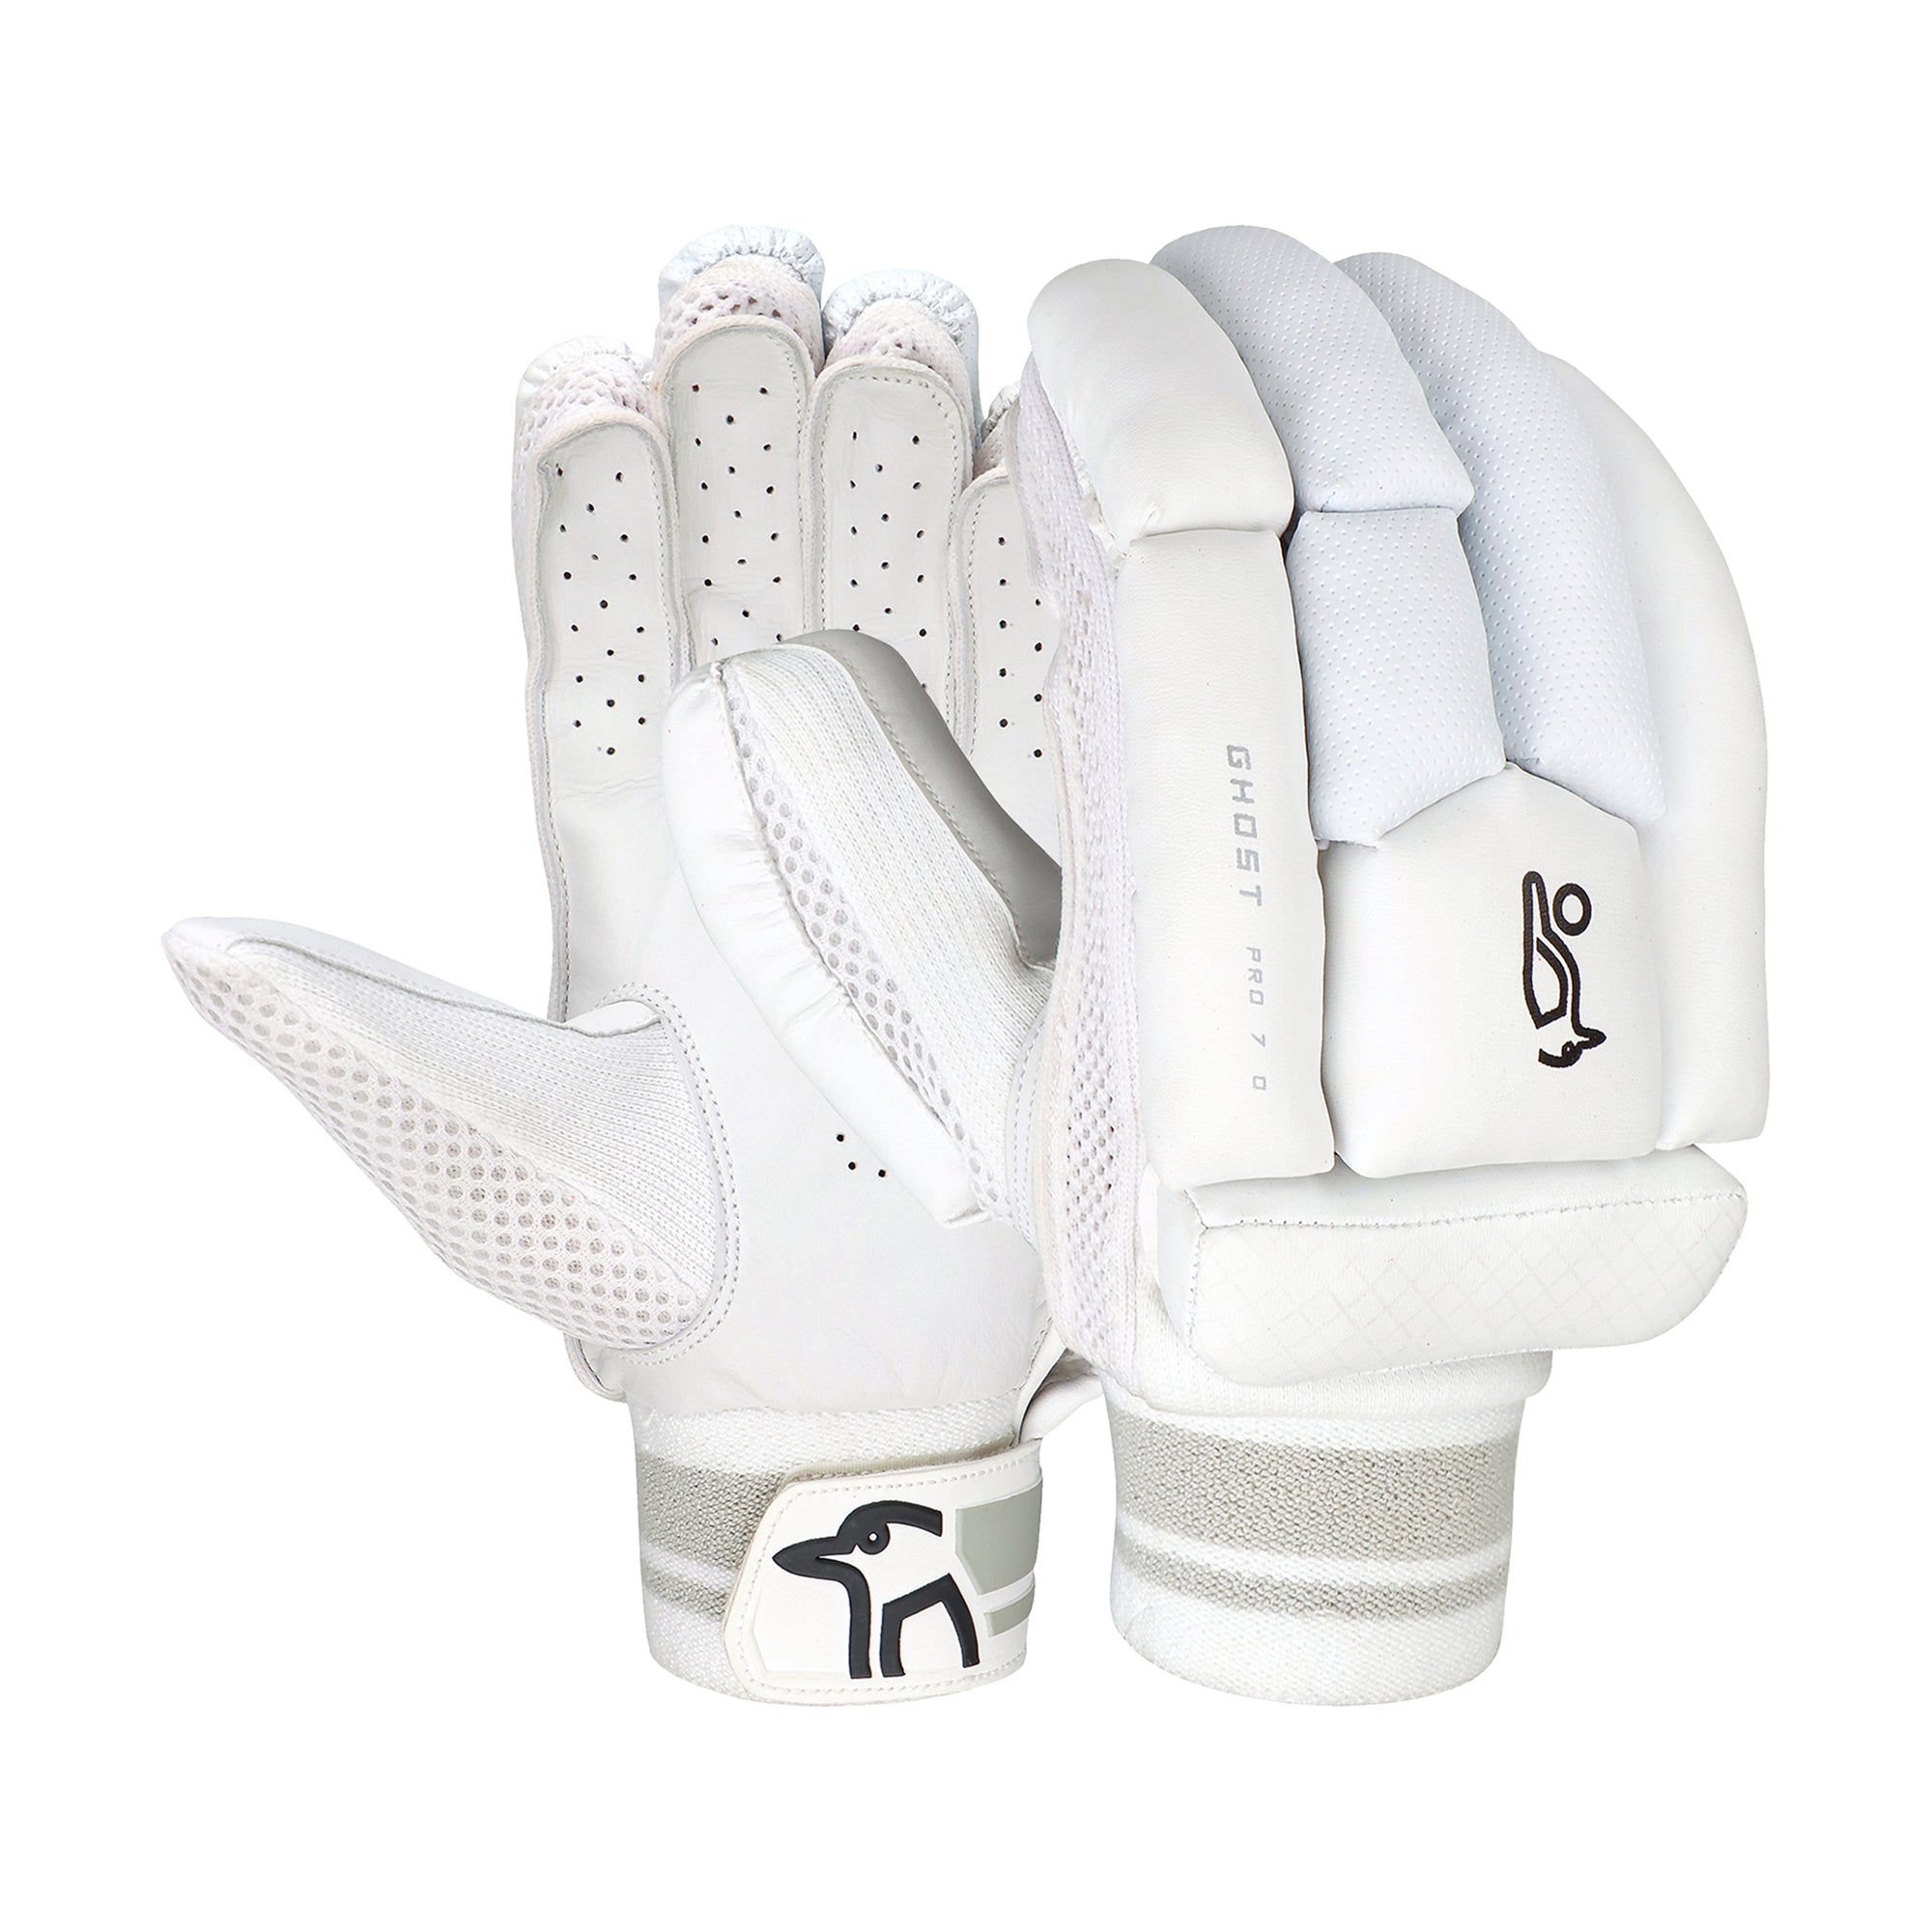 Kookaburra Ghost Pro 7.0 Batting Gloves - The Cricket Warehouse